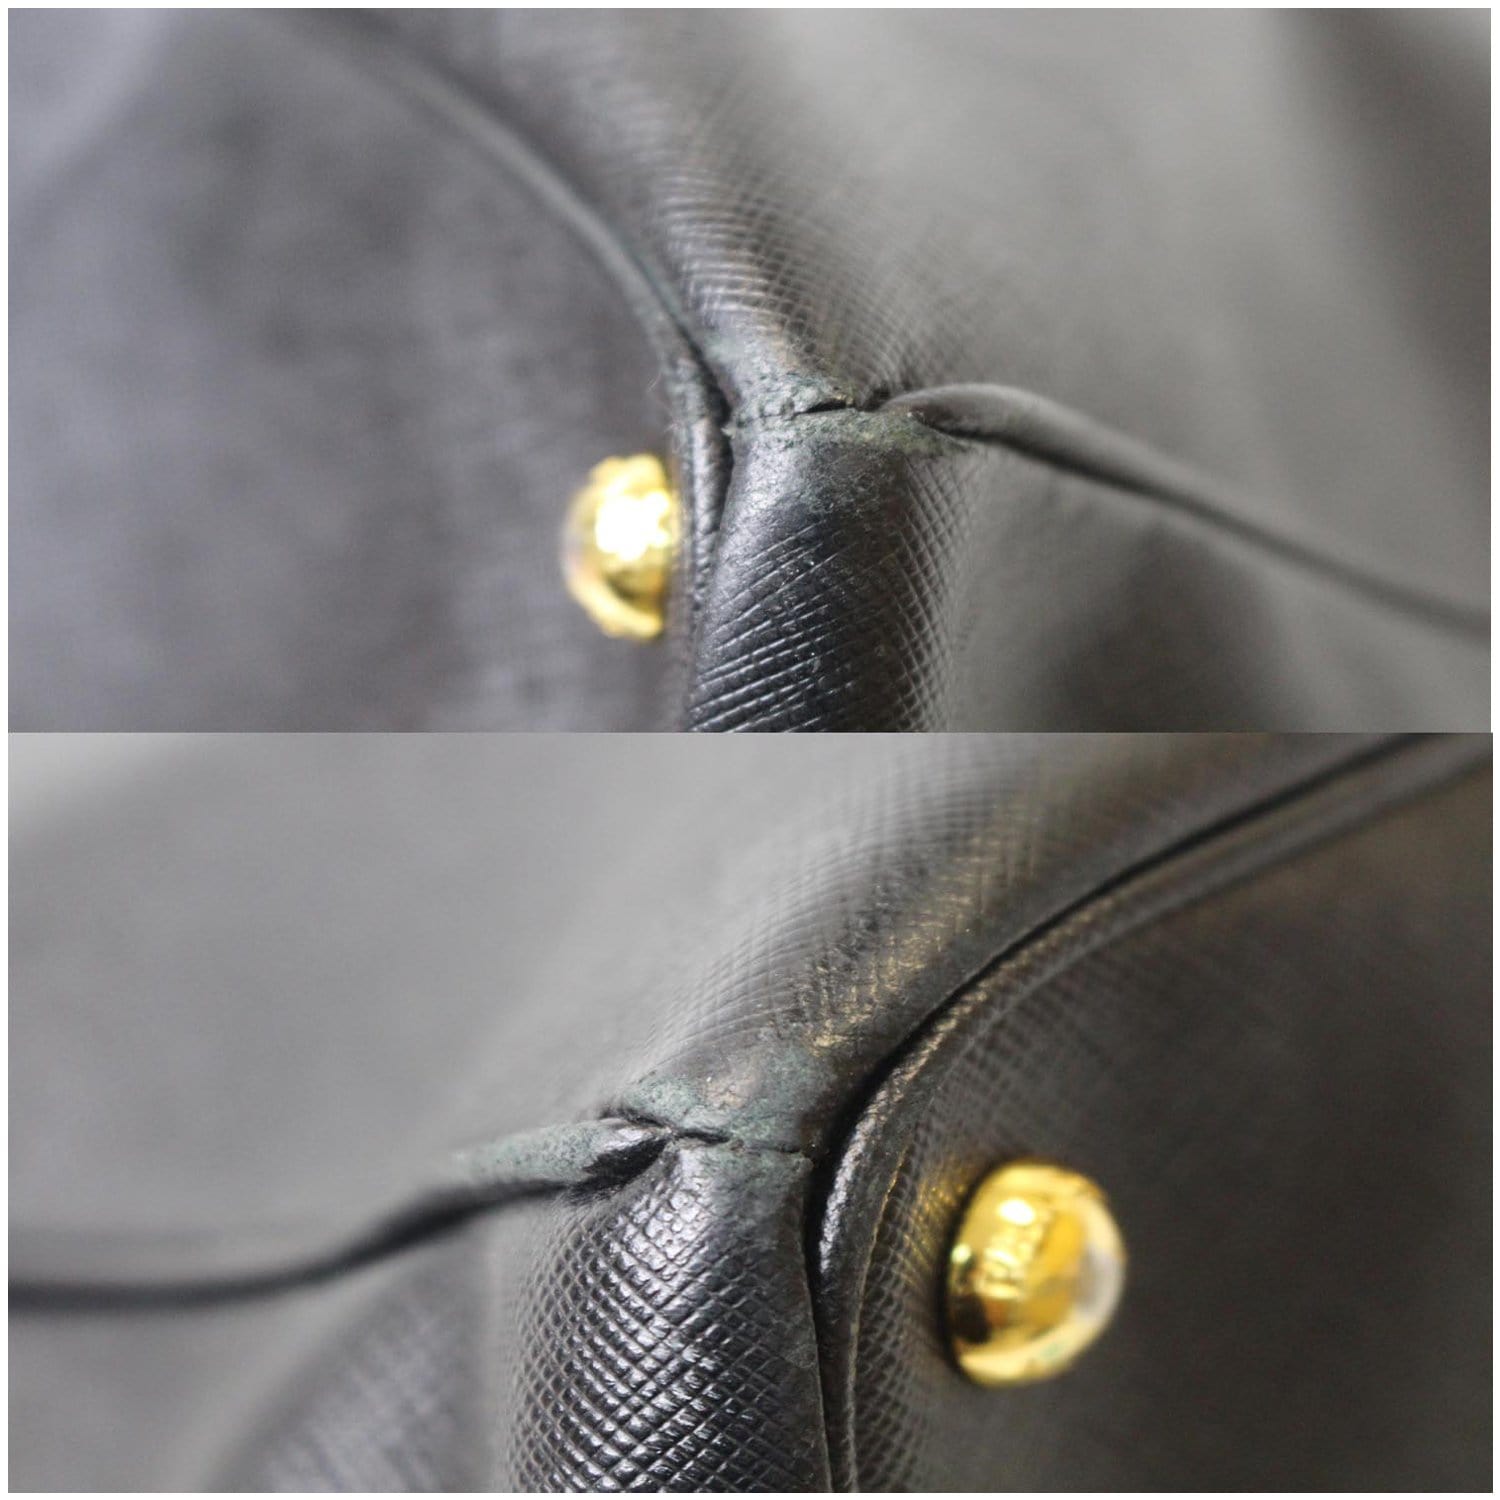 Prada Saffiano Galleria Tote Bag in grey calf leather leather ref